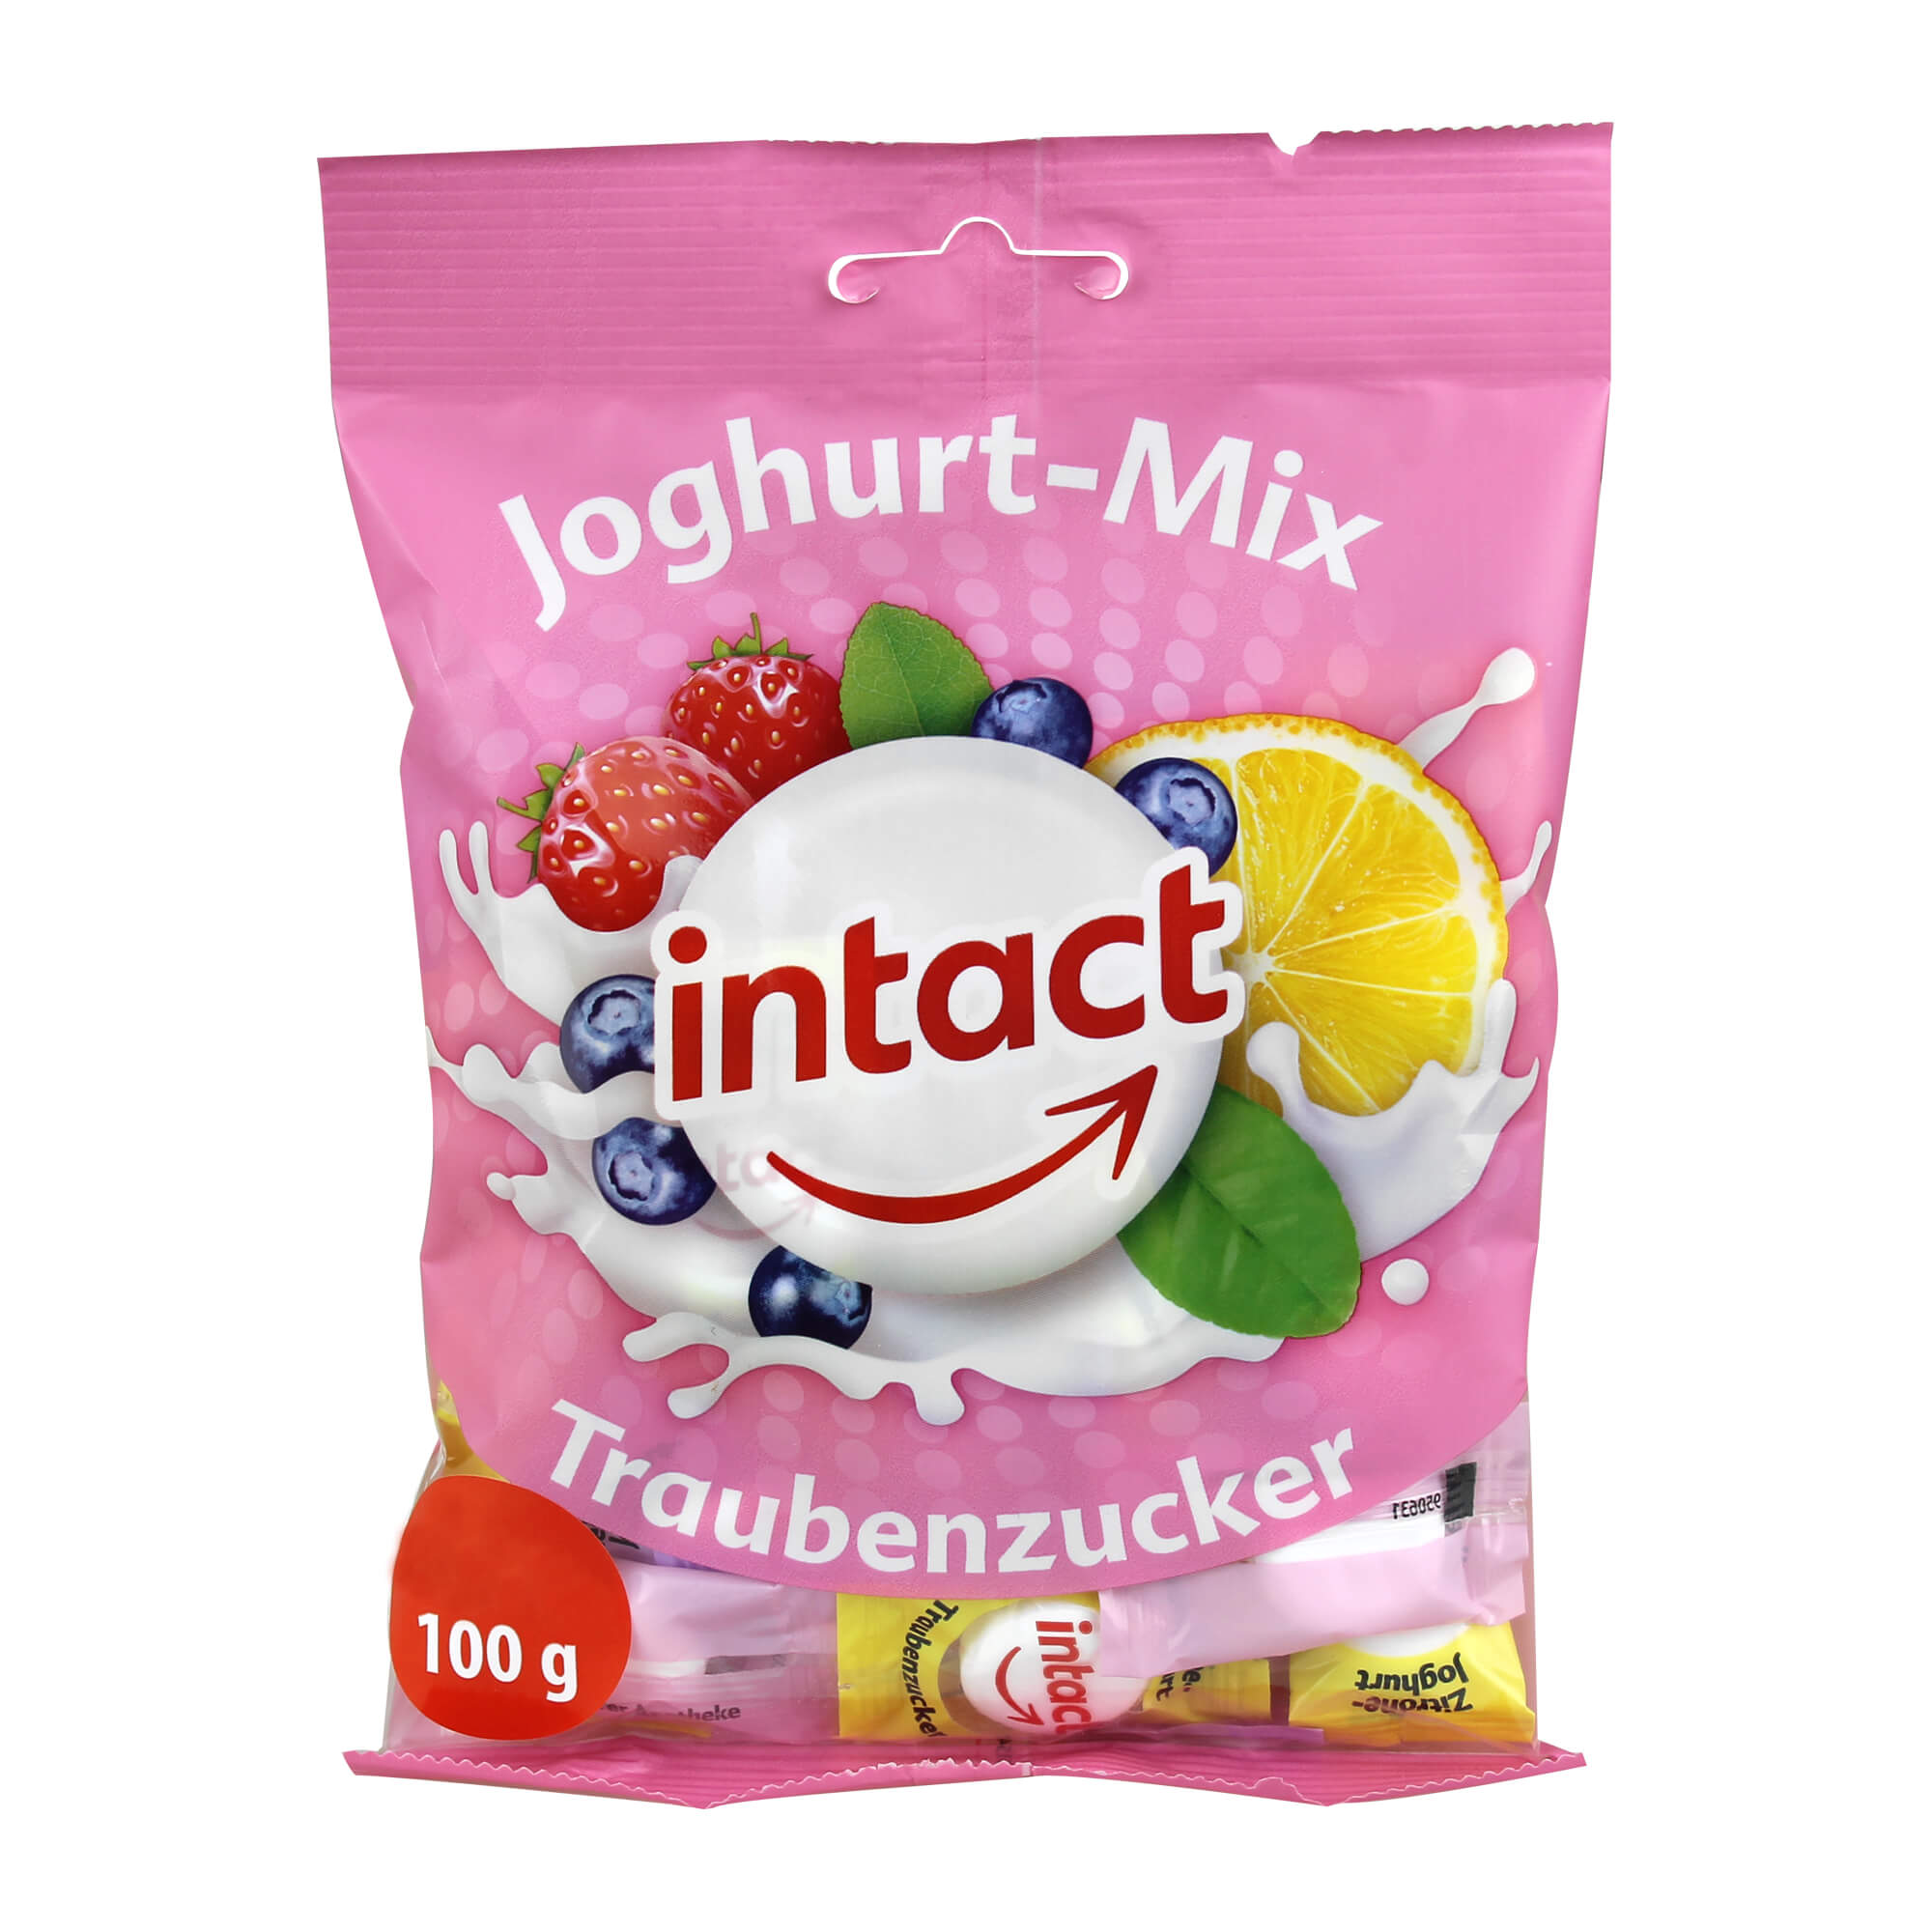 Traubenzuckerbonbons mit Erdbeer-Joghurt-, Heidelbeer-Joghurt- und Zitrone-Joghurt-Geschmack.